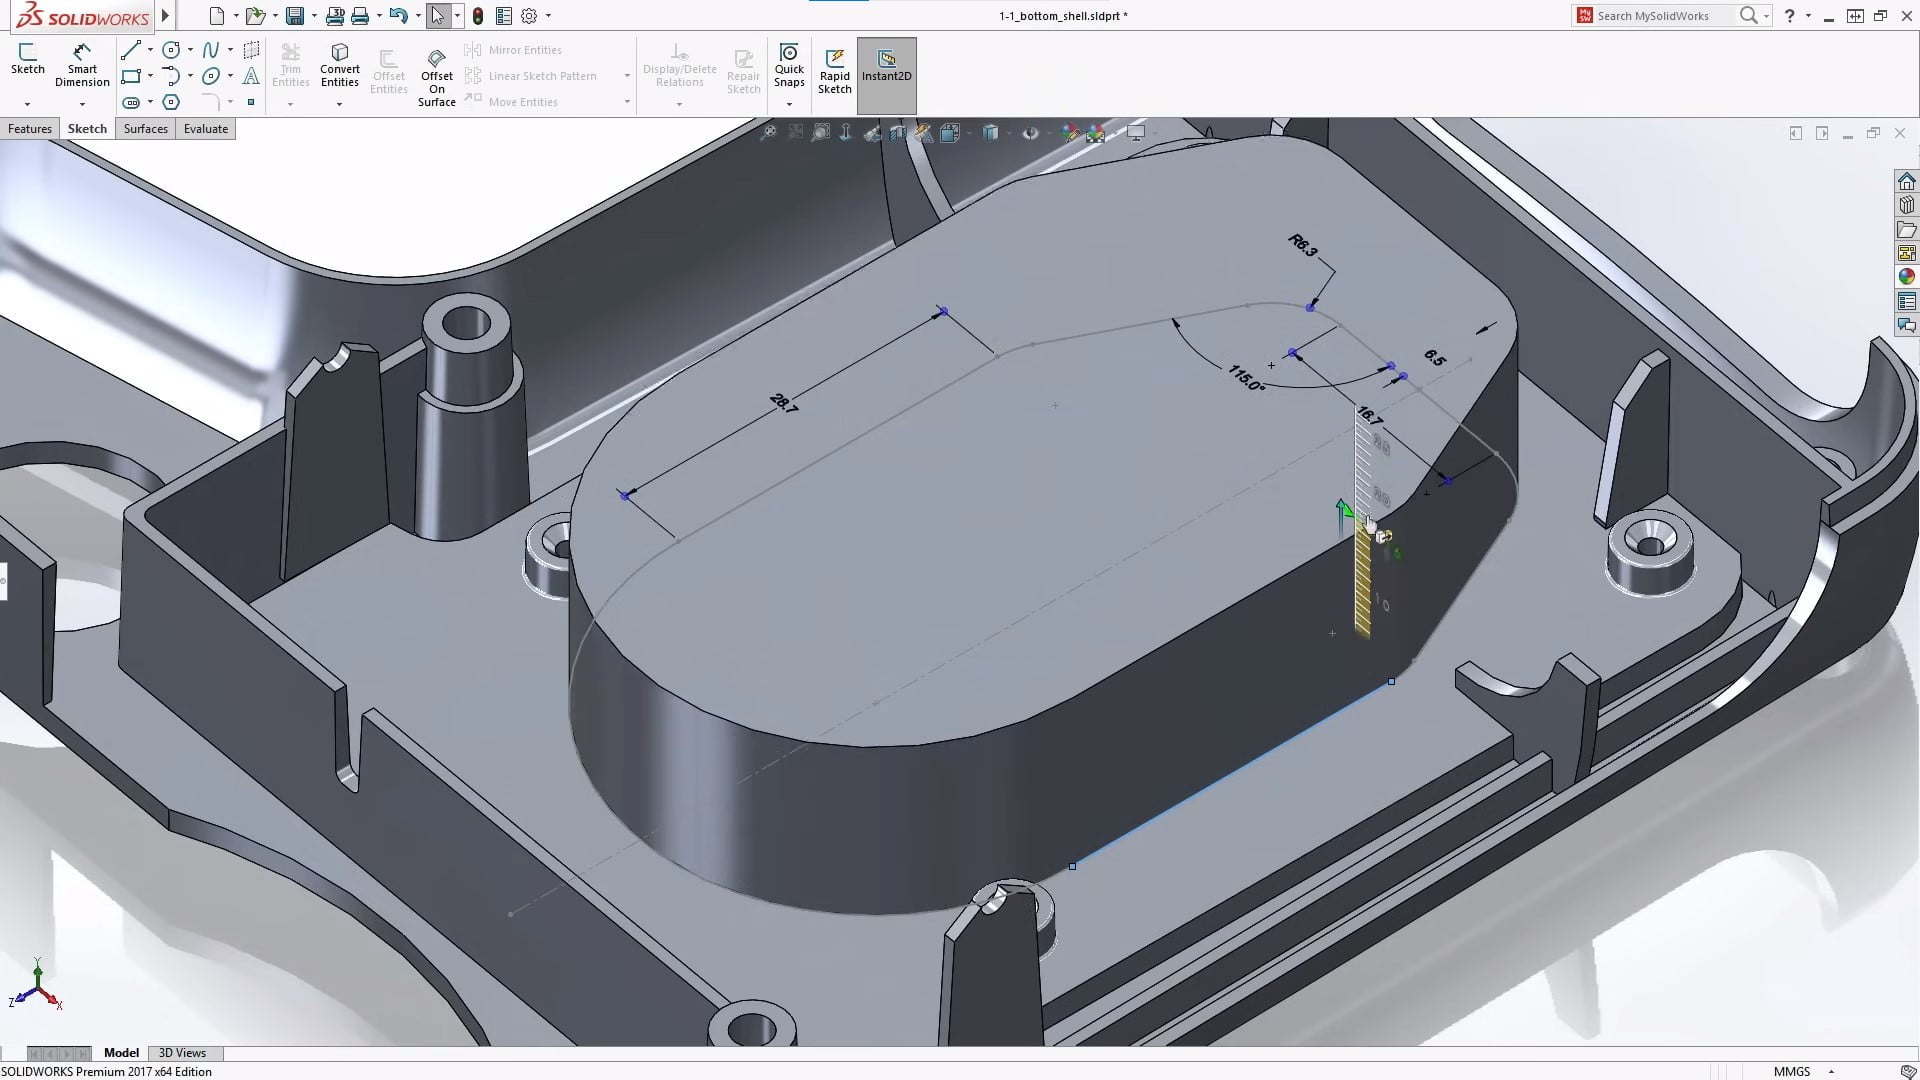 Feature1-SOLIDWORKS-Desktop-3D-CAD